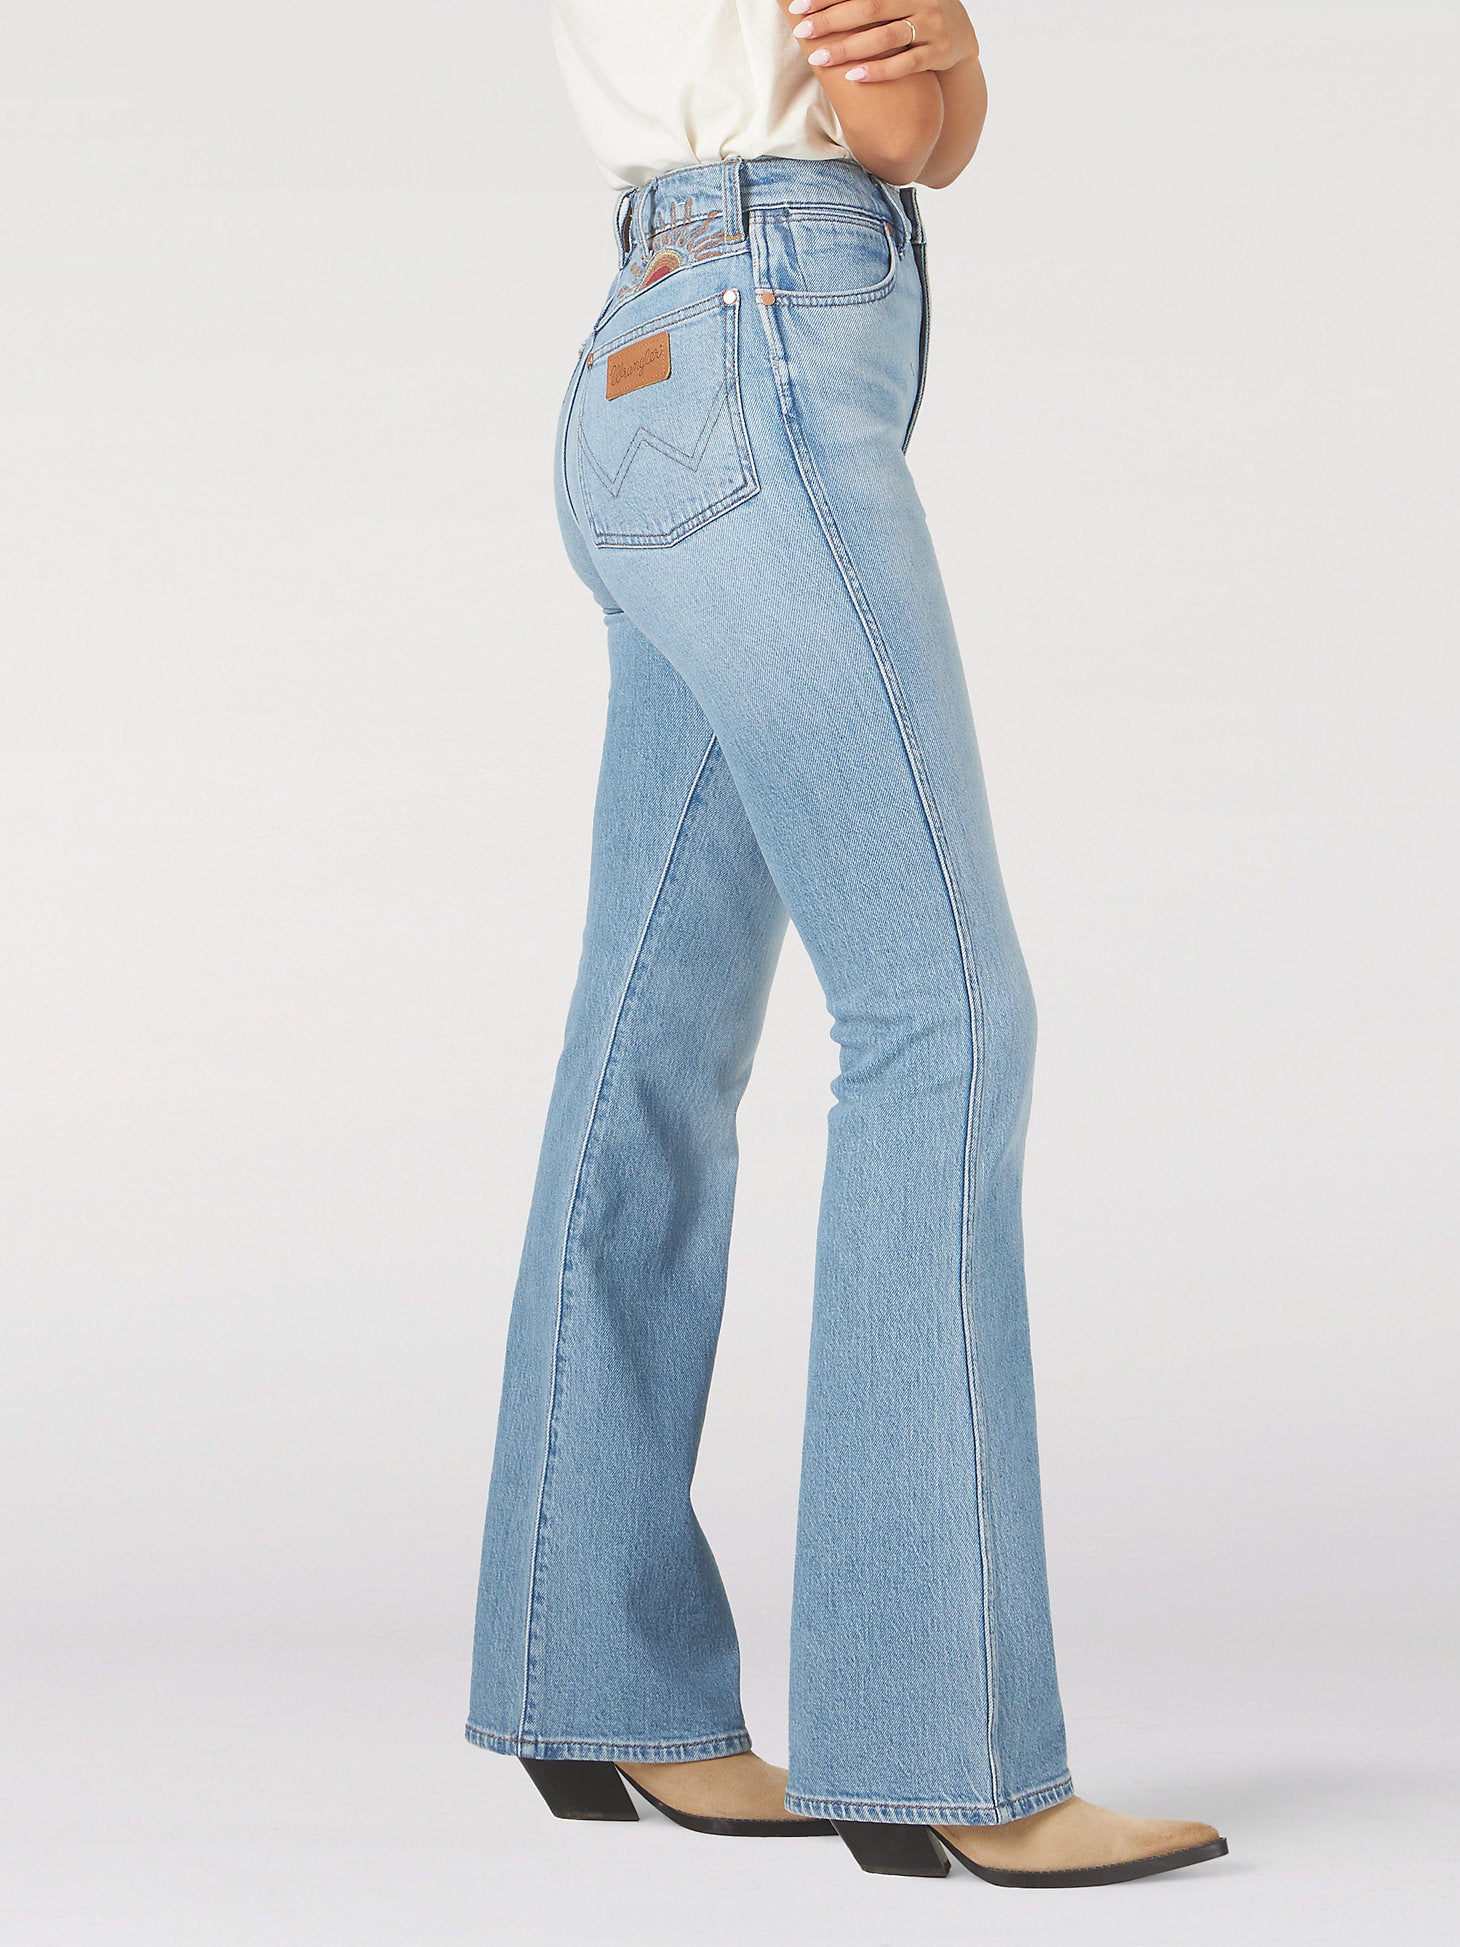 Wrangler® Westward High Rise Boot Jean - Women's Jeans in